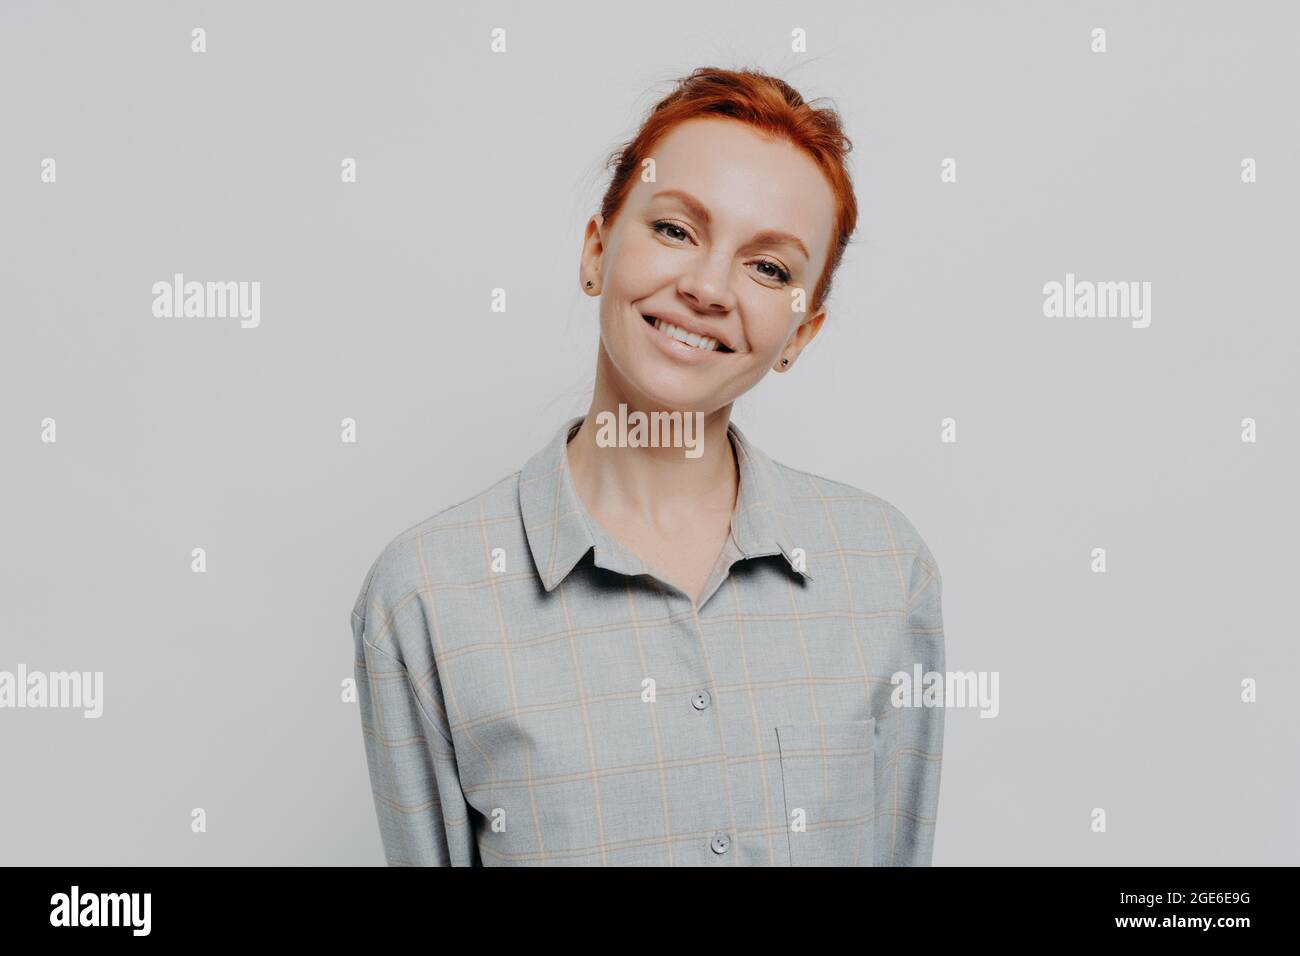 Alegre hermosa mujer de pelo rojo con una sonrisa radiante posando aislado en el fondo gris del estudio Foto de stock